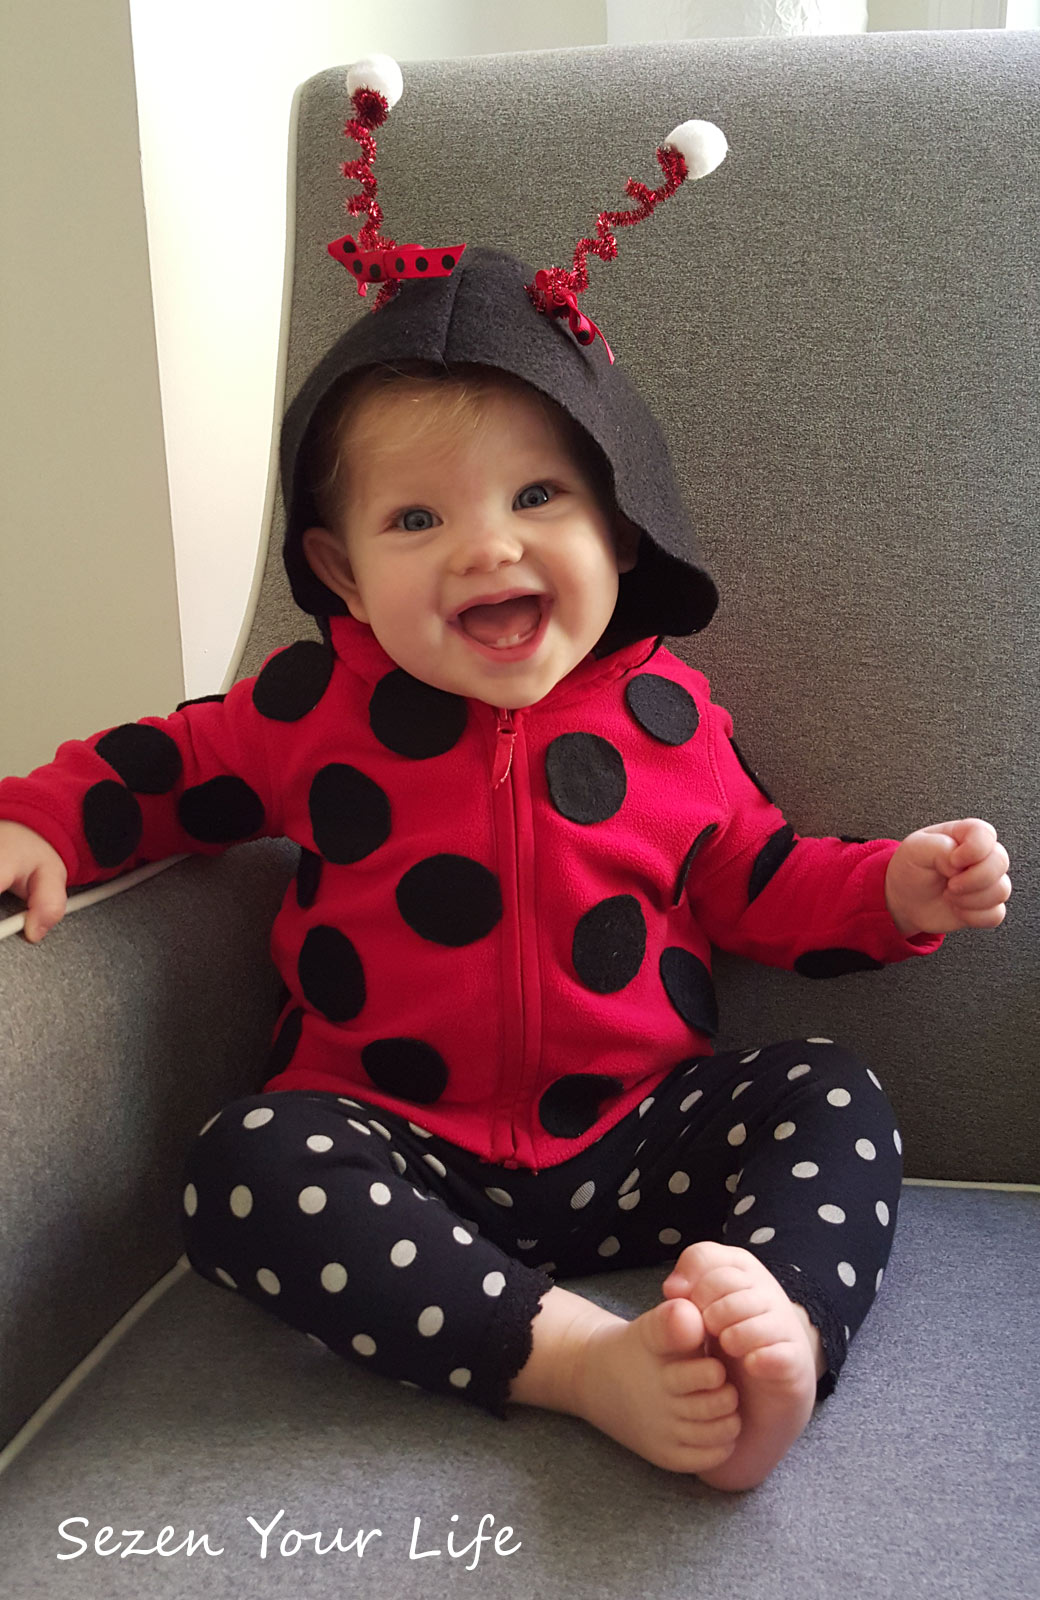 Lil Ladybug Costume for Infant's